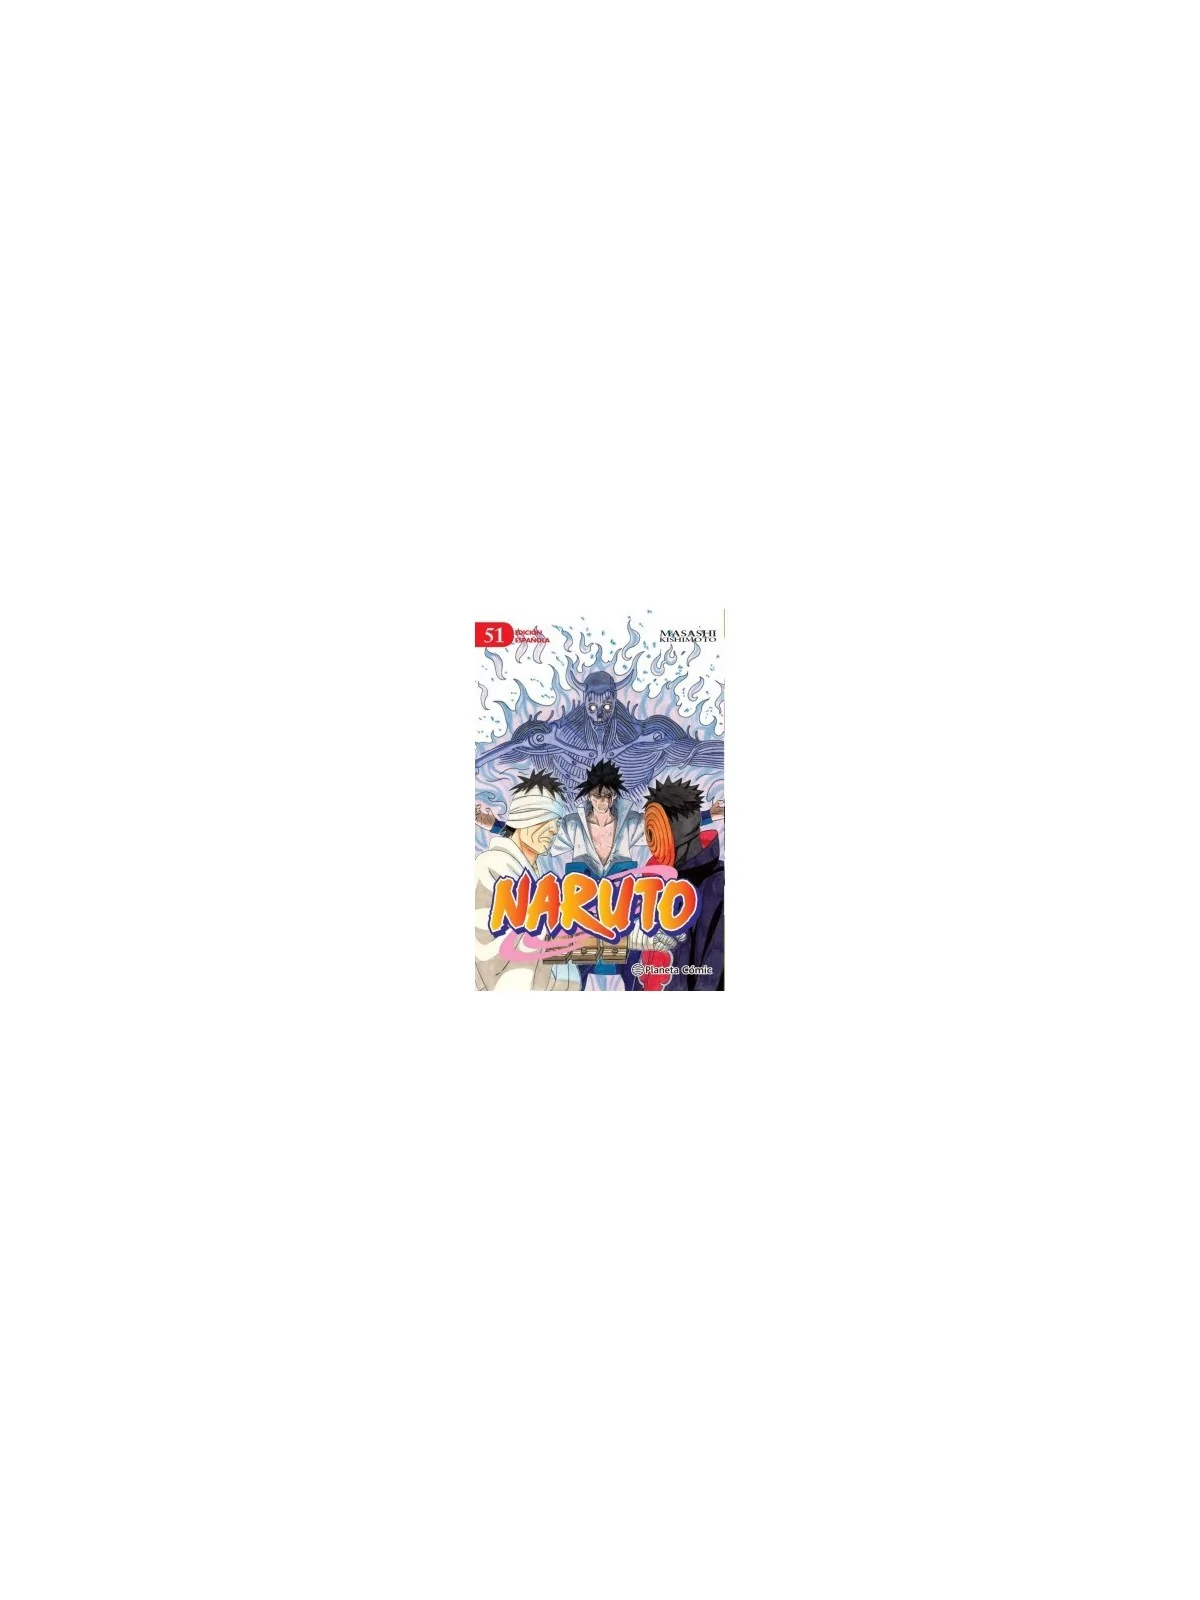 Comprar Naruto 51 barato al mejor precio 7,12 € de Planeta Comic